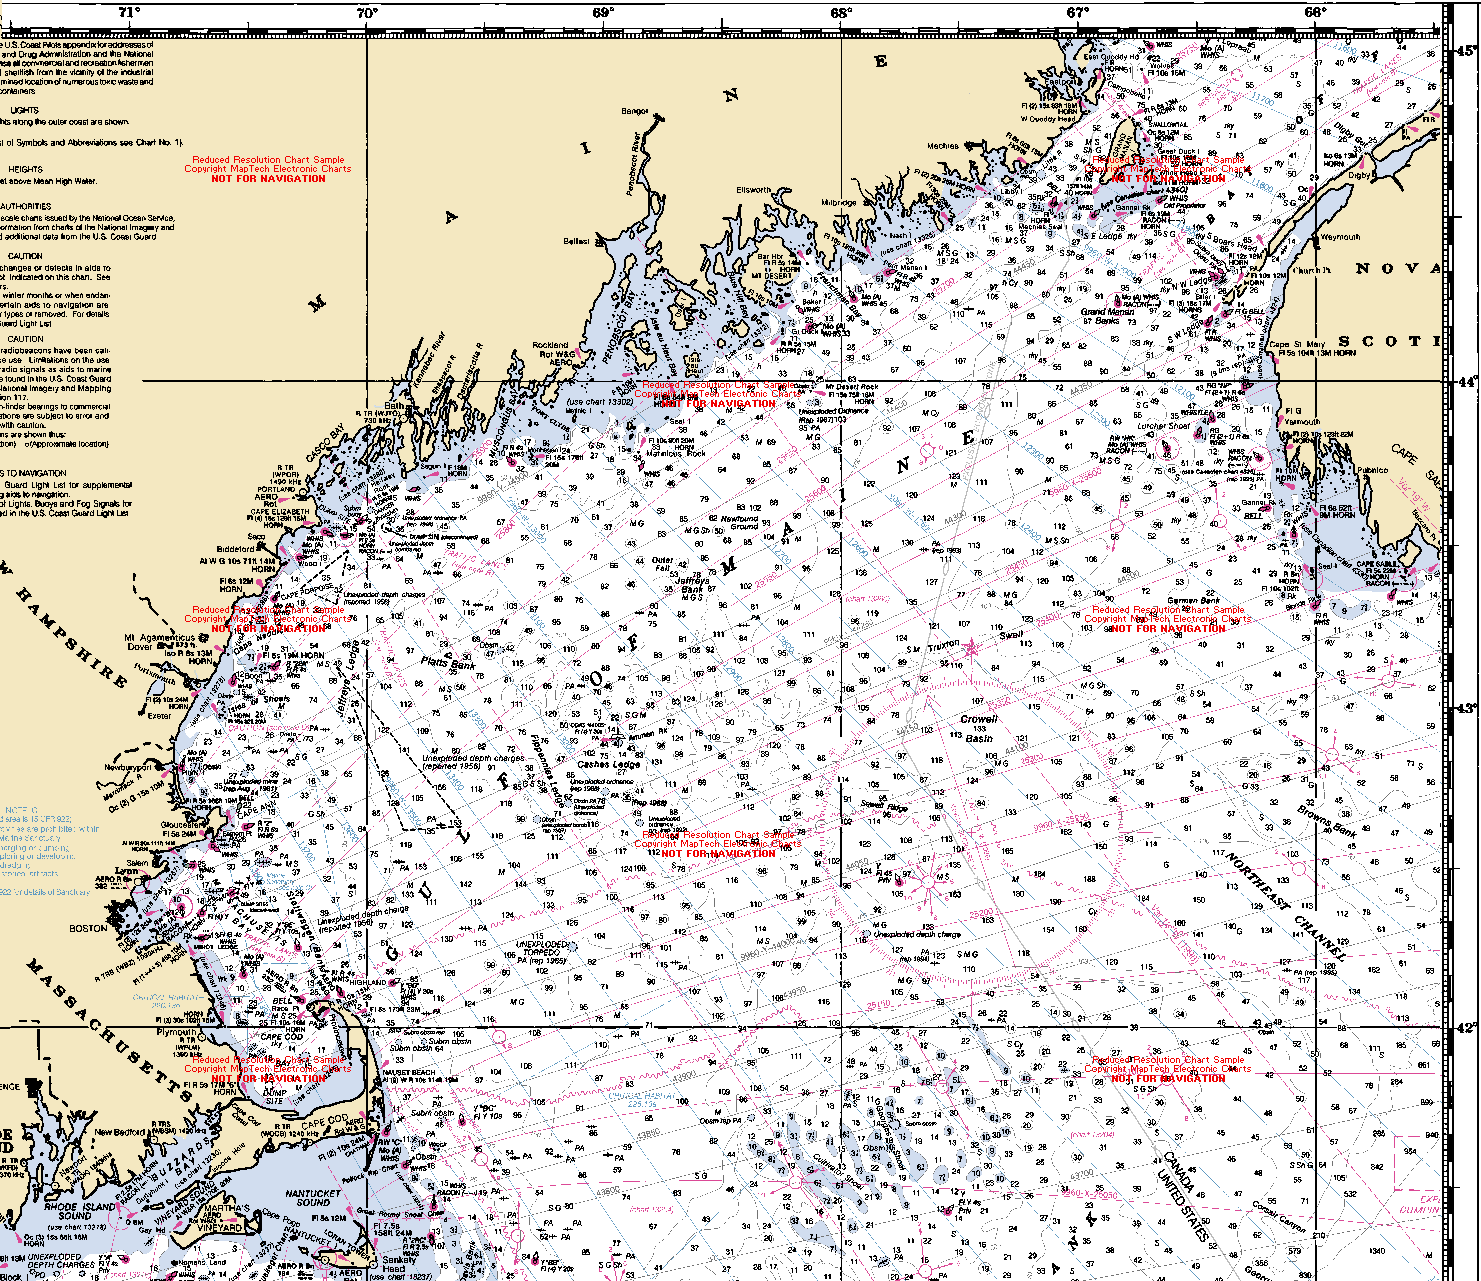 Gulf Of Maine Chart